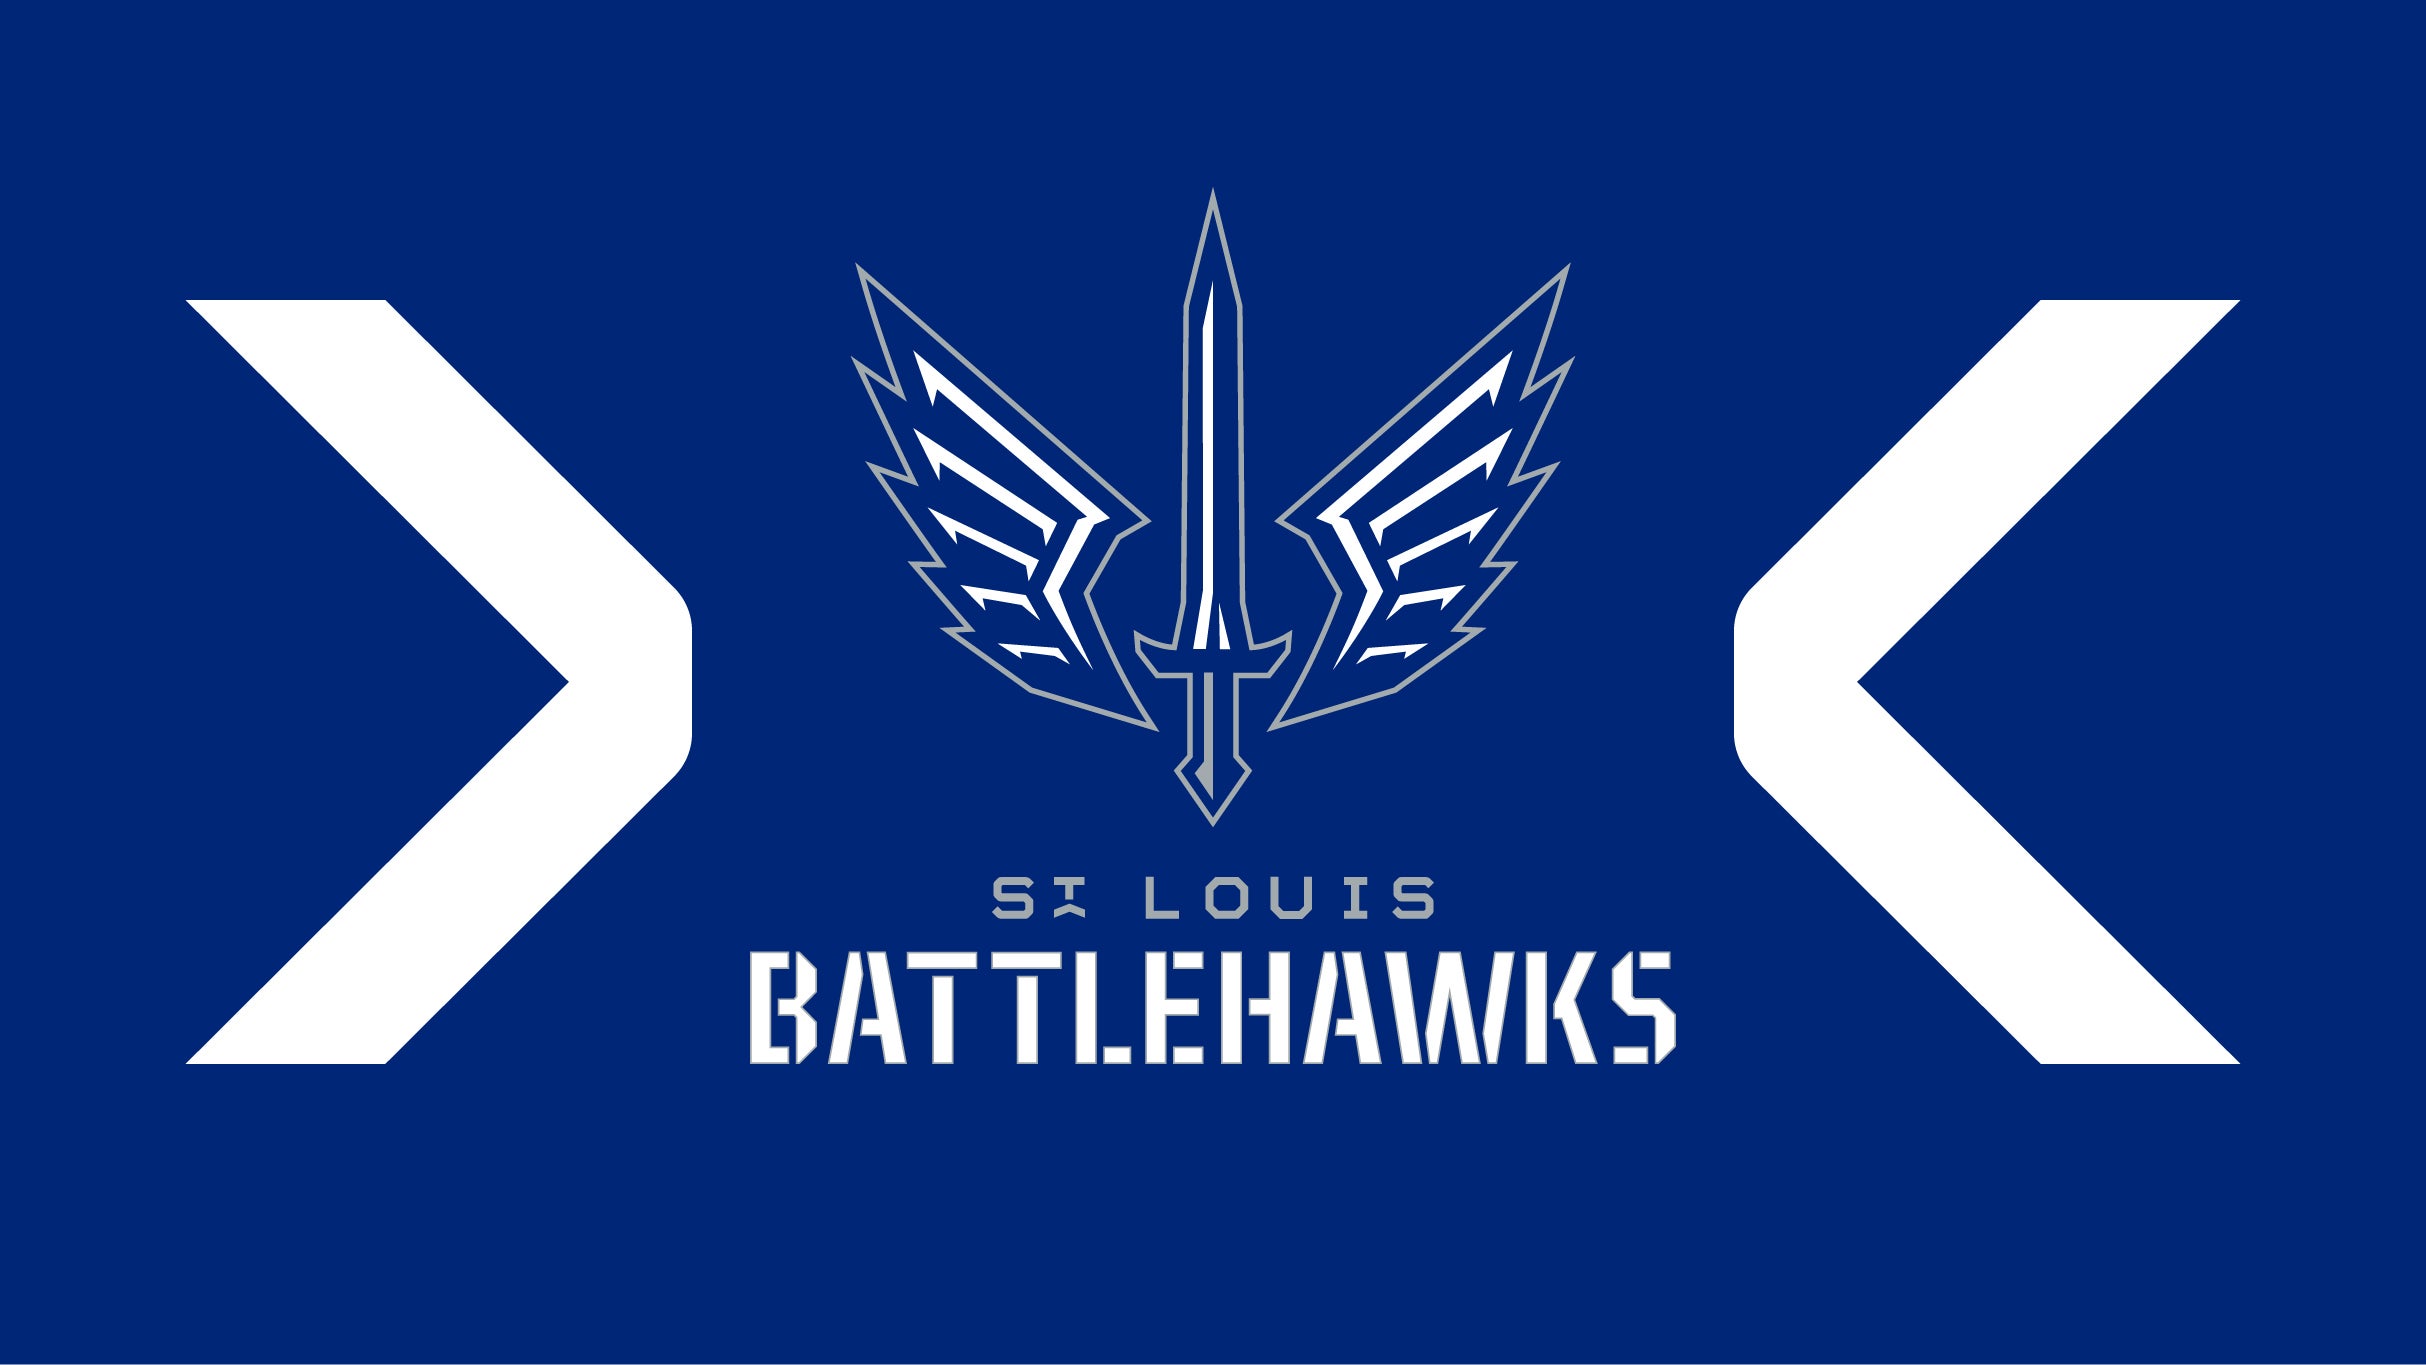 XFL's BattleHawks take flight in St. Louis debut